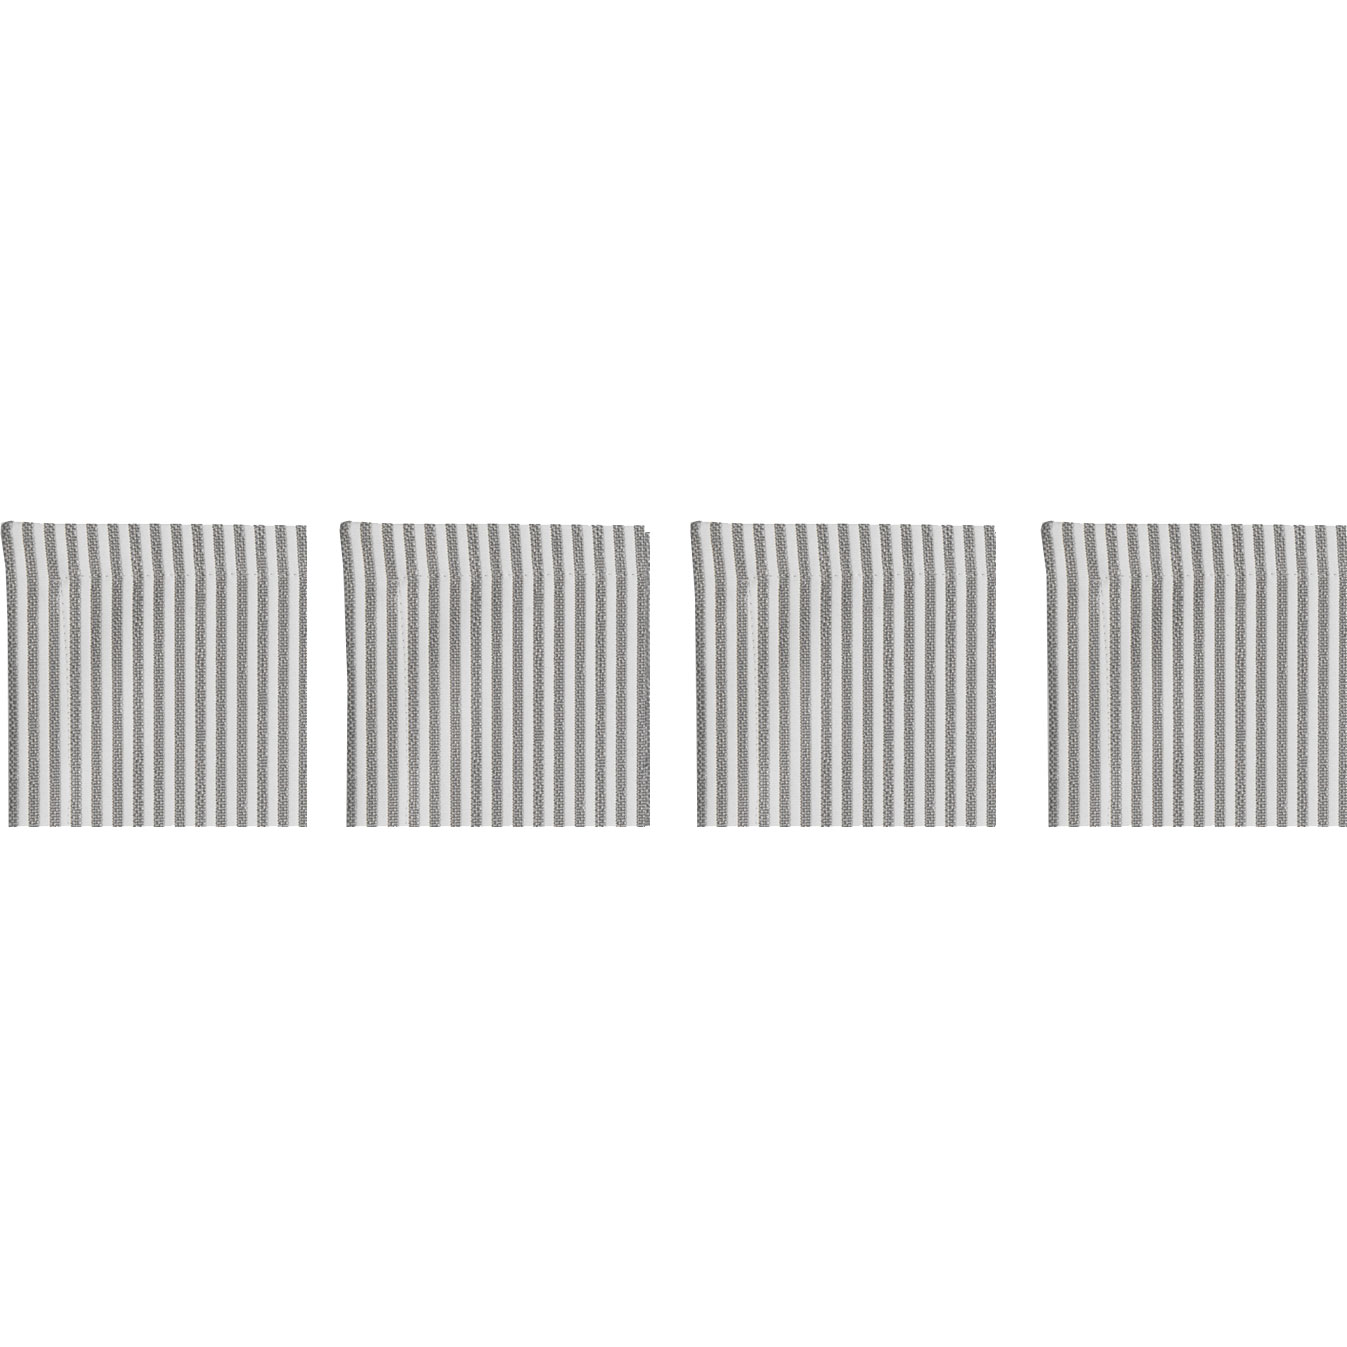 Narrow Stripe Coasters 10x10 cm 4-pack, Grey